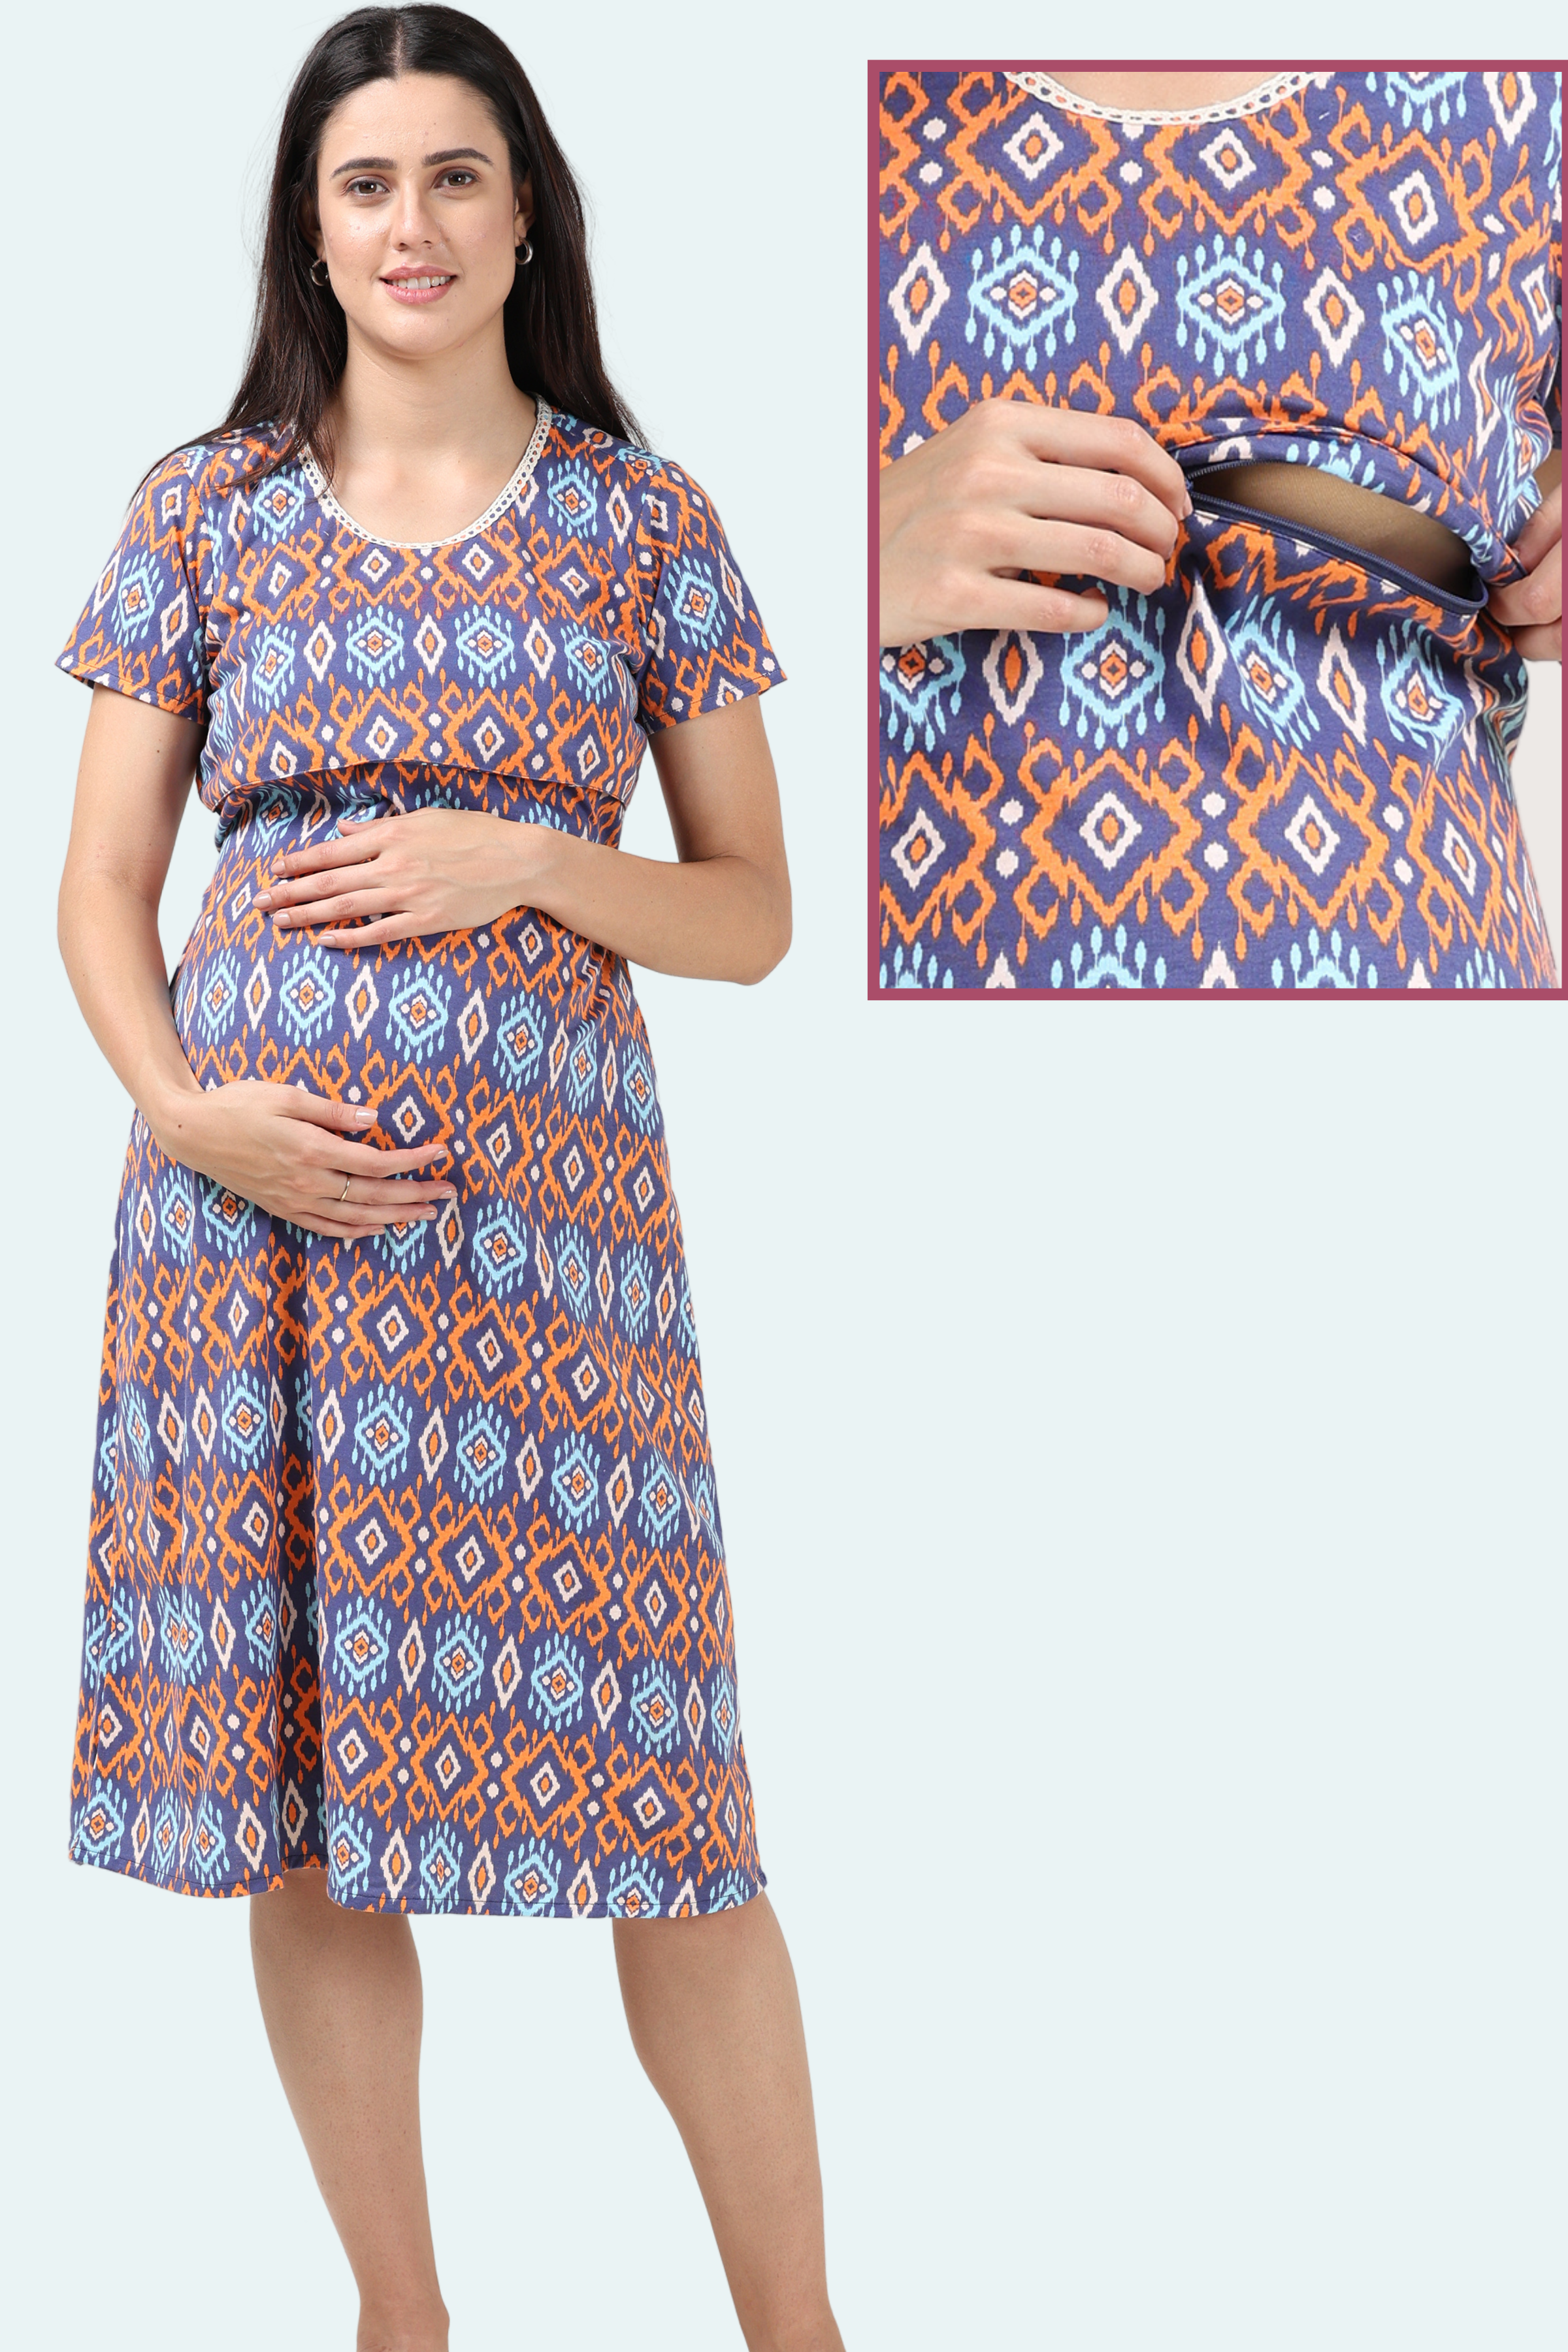 Maternity Kurtas Below 500 - Buy Maternity Kurtas Below 500 online in India